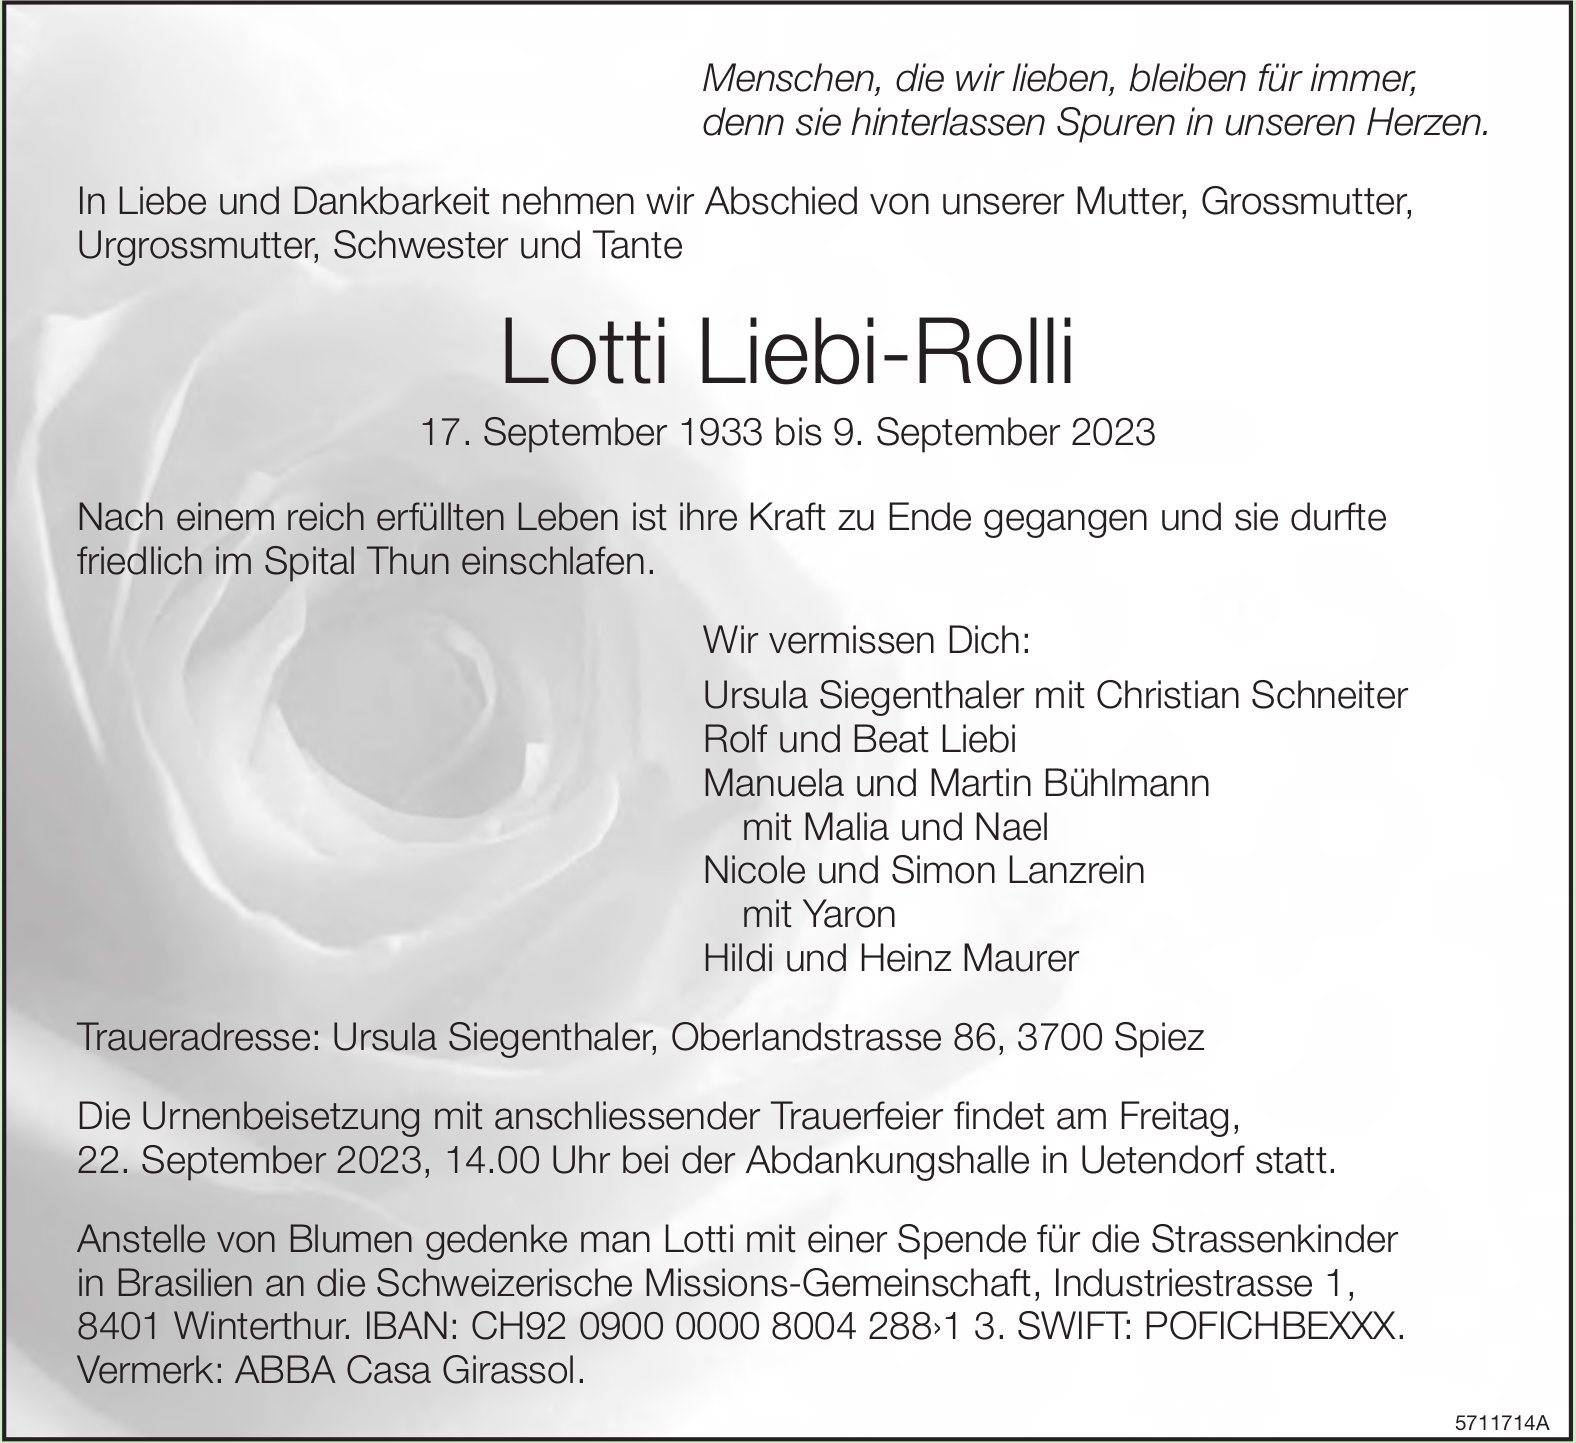 Liebi-Rolli Lotti, September 2023 / TA